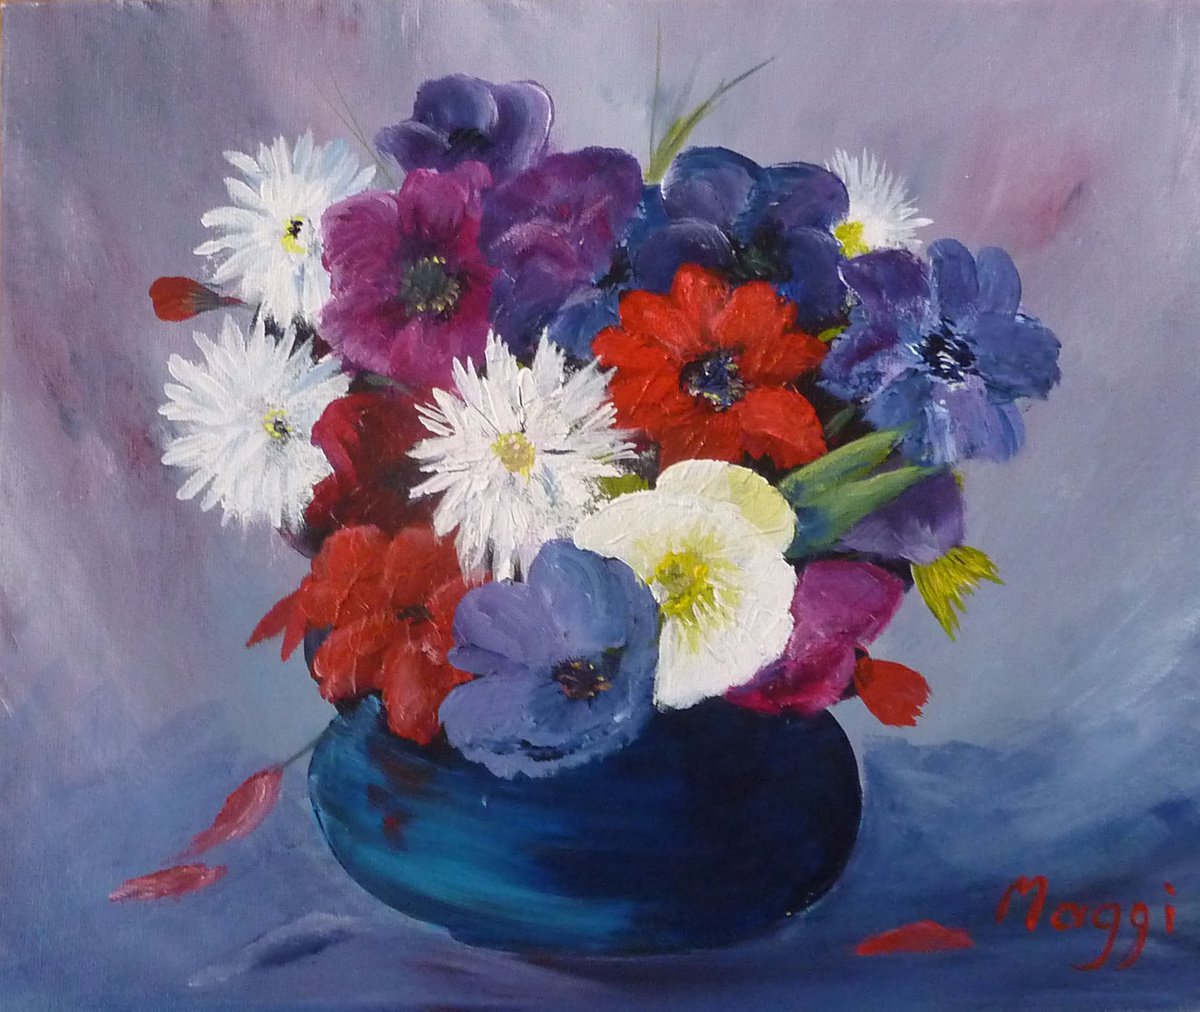 Bowl of Summer Blooms by Margaret Denholm